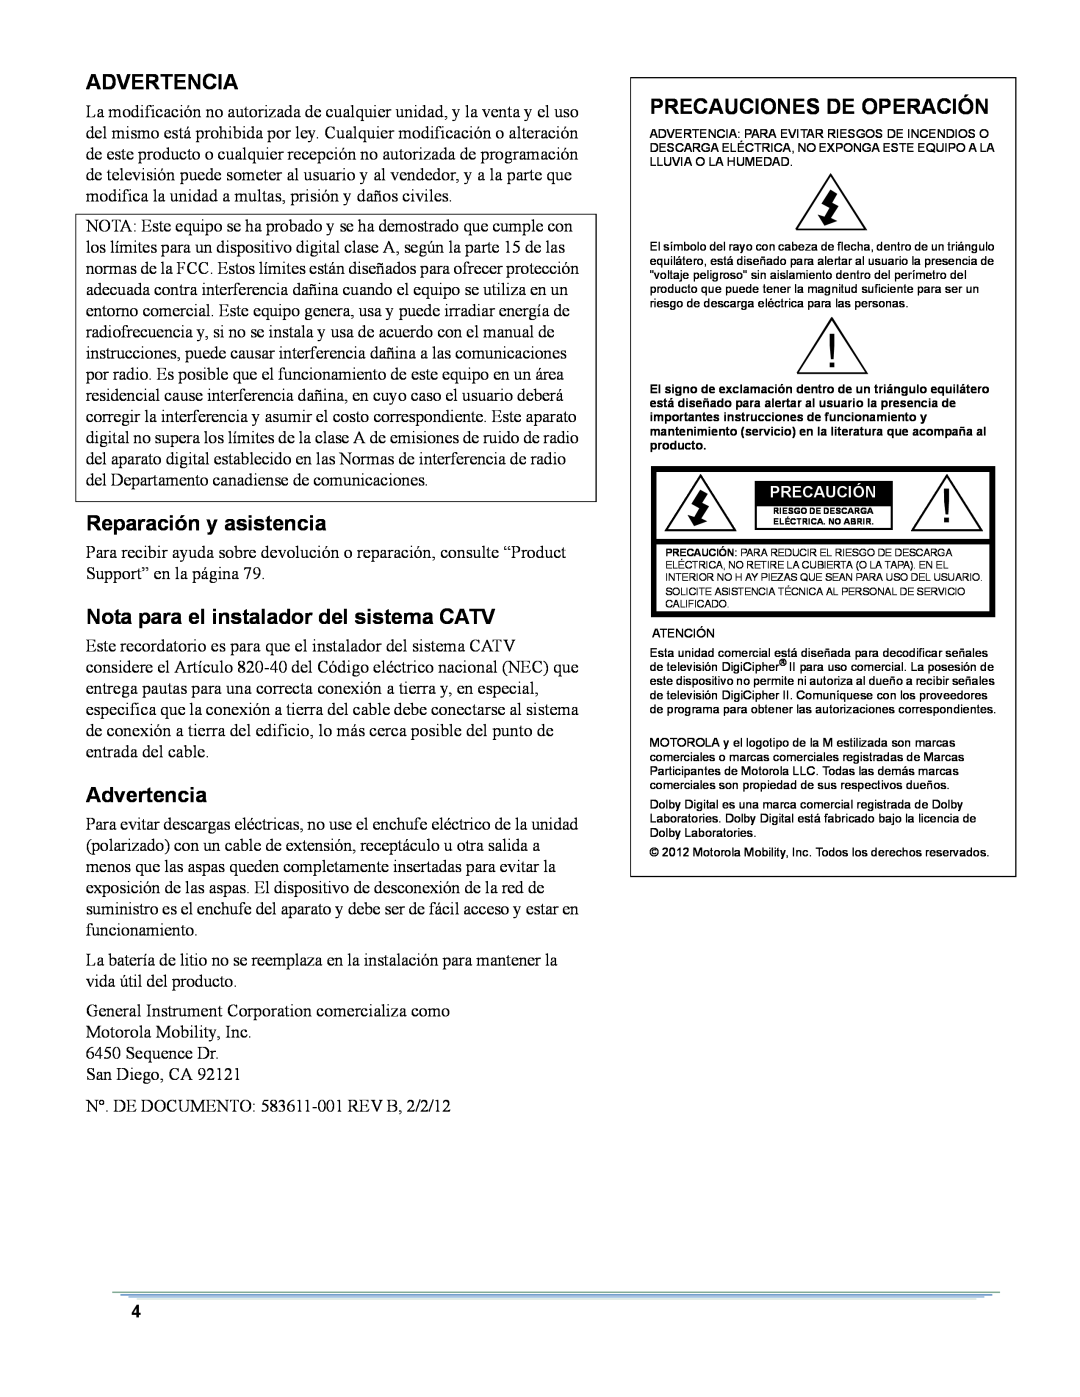 Motorola DSR-6400 manual Advertencia, Reparación y asistencia, Nota para el instalador del sistema CATV 